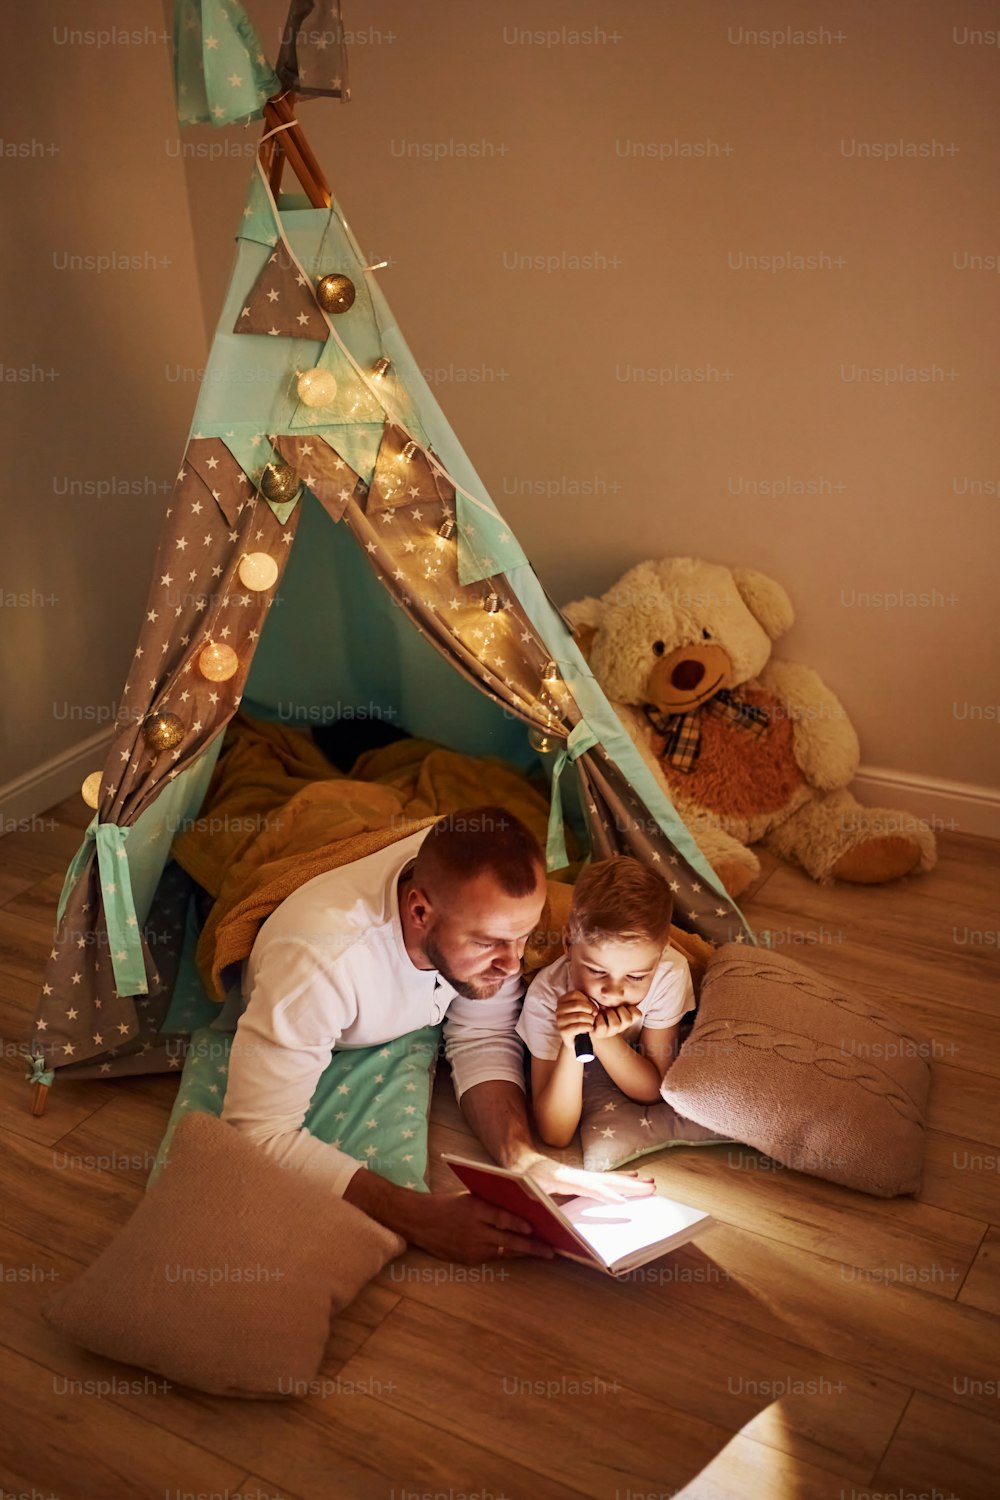 Buch lesen und Taschenlampe benutzen. Vater und seine jungen Jungen verbringen Zeit zusammen drinnen in der Nähe des Zeltes.